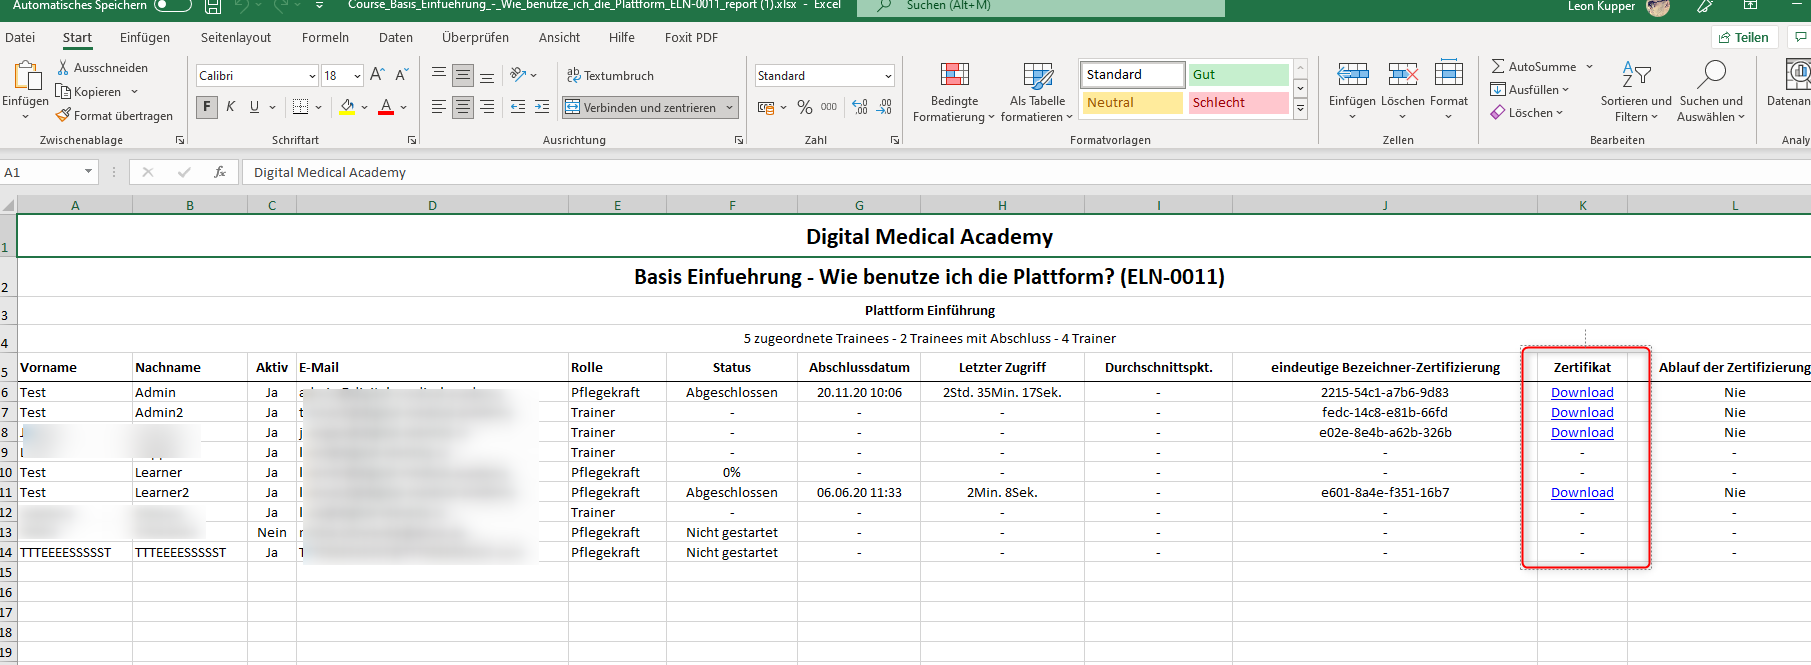 Digital Medical Academy - Wie lade ich am schnellsten Zertifikate aller Pflegekräfte herunter? 4